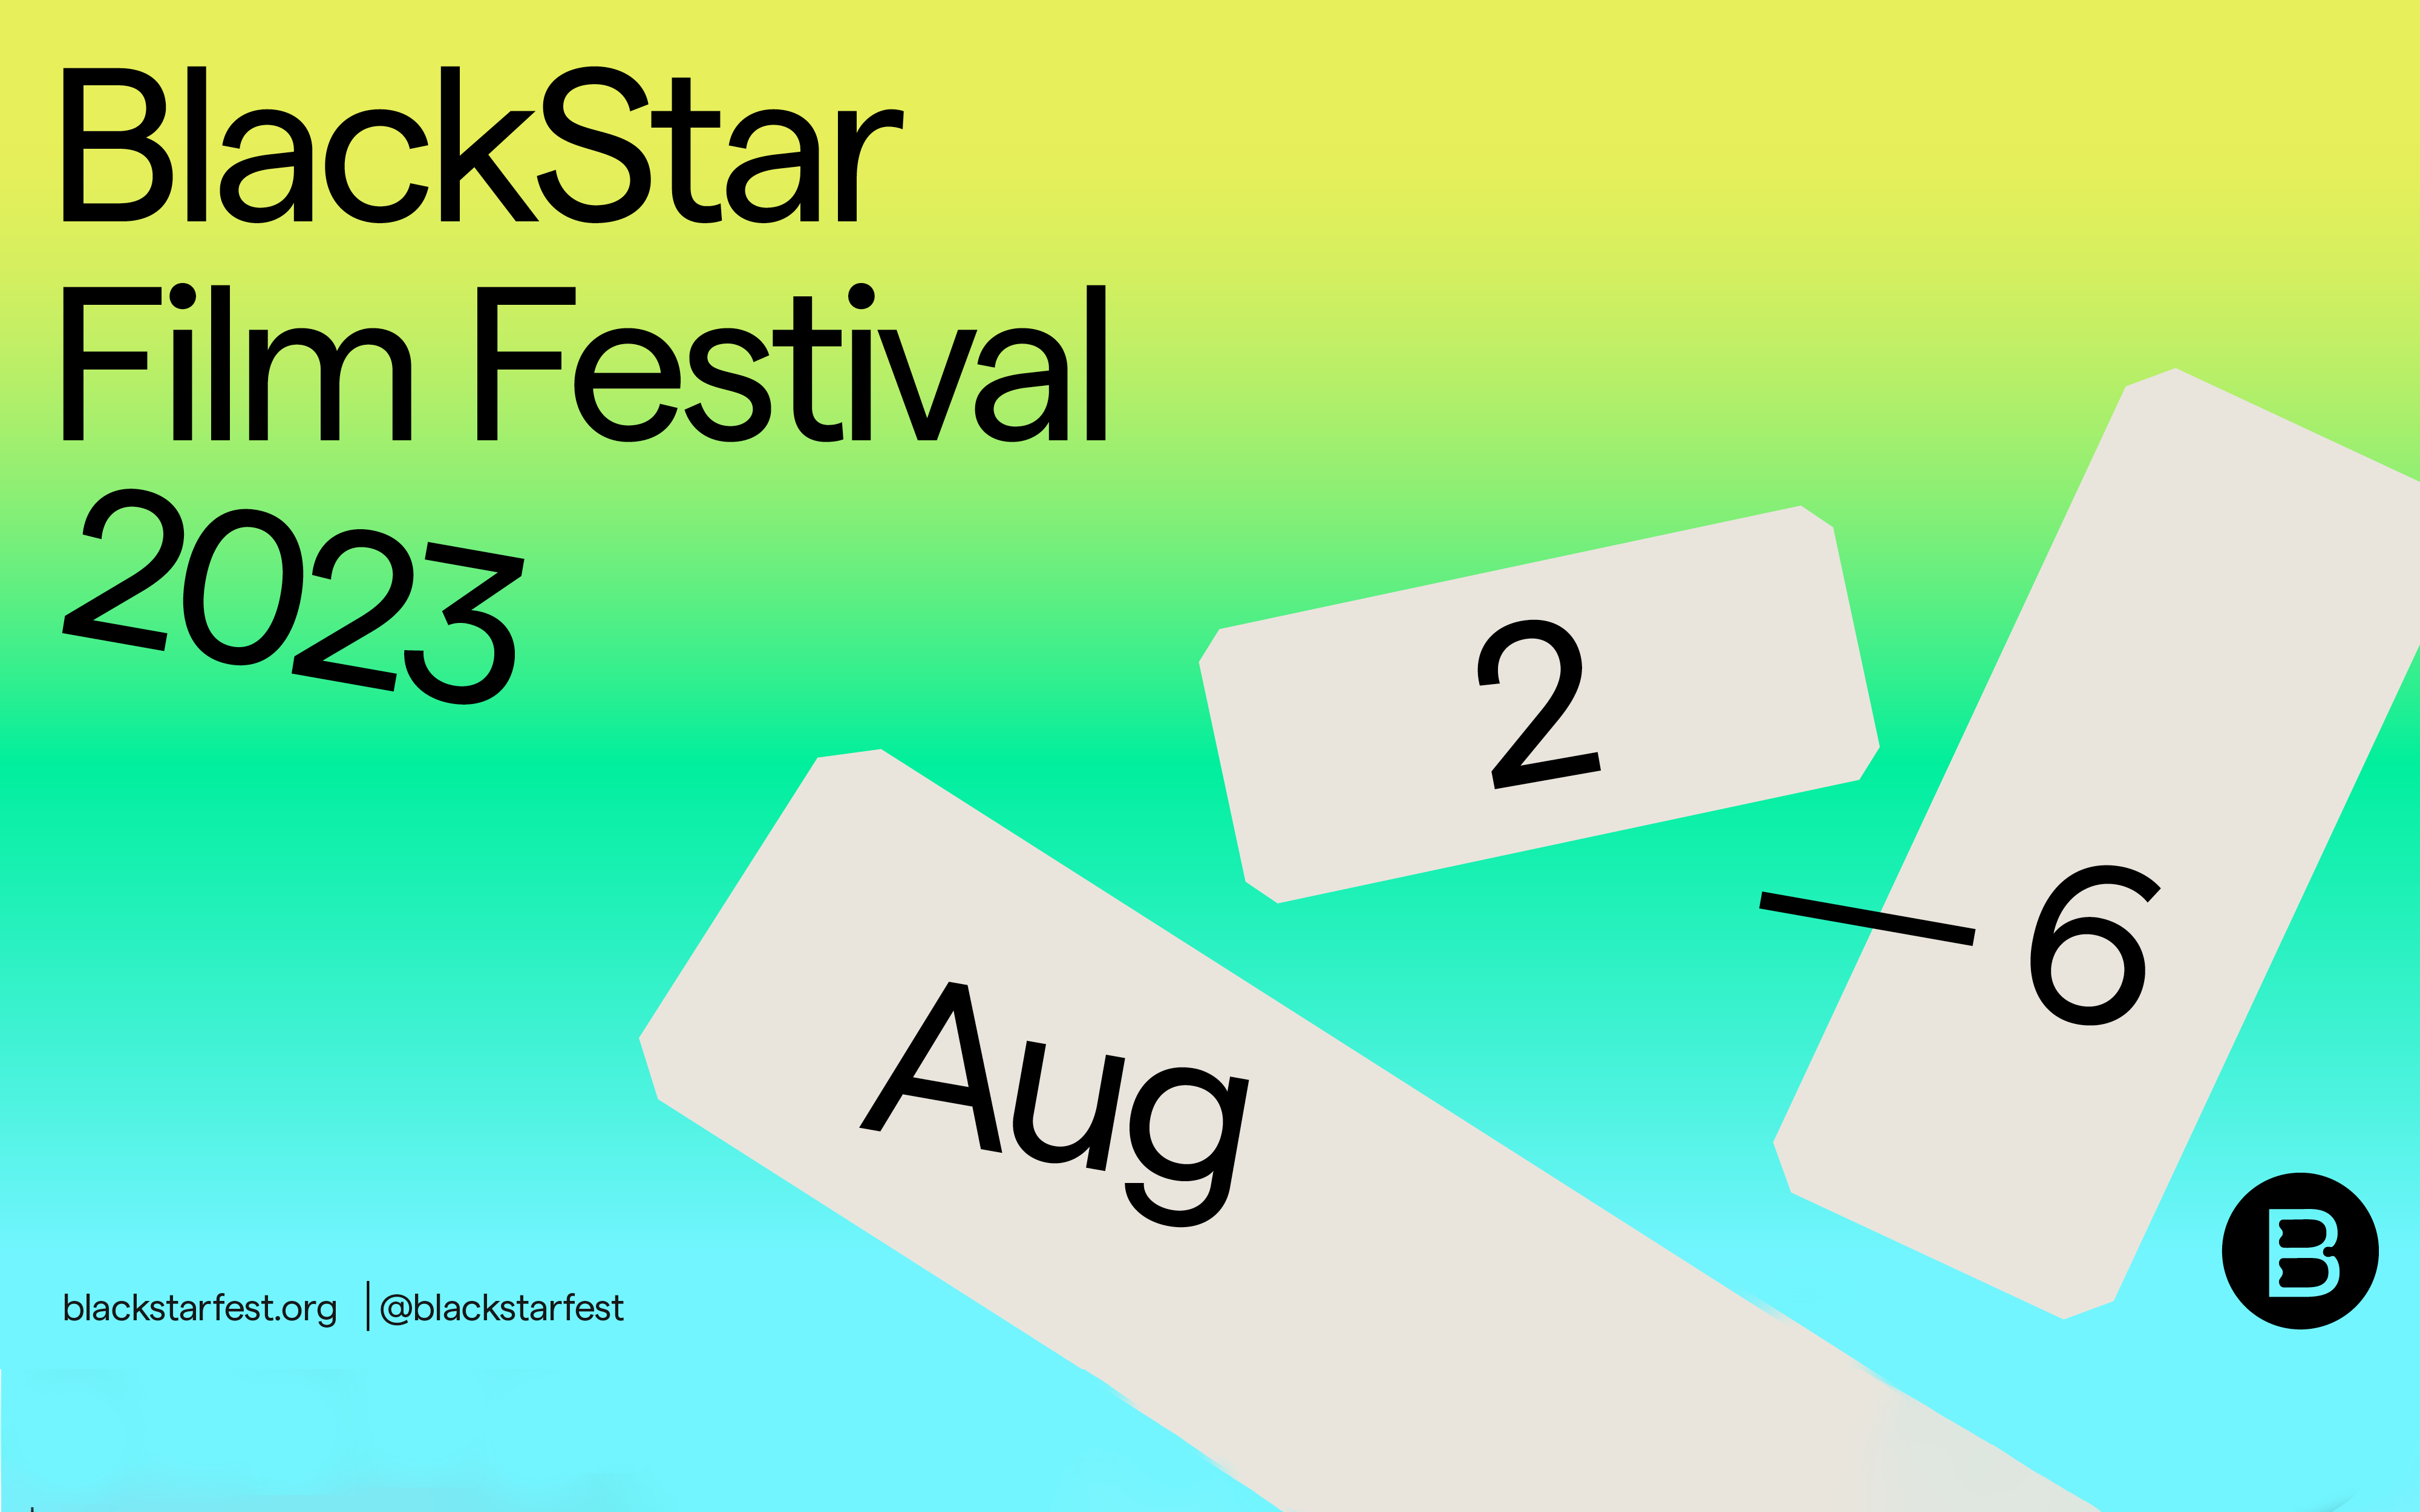 Logo for the BlackStar Film Festival 2023 happening August 2-6, 2023 in Philadelphia